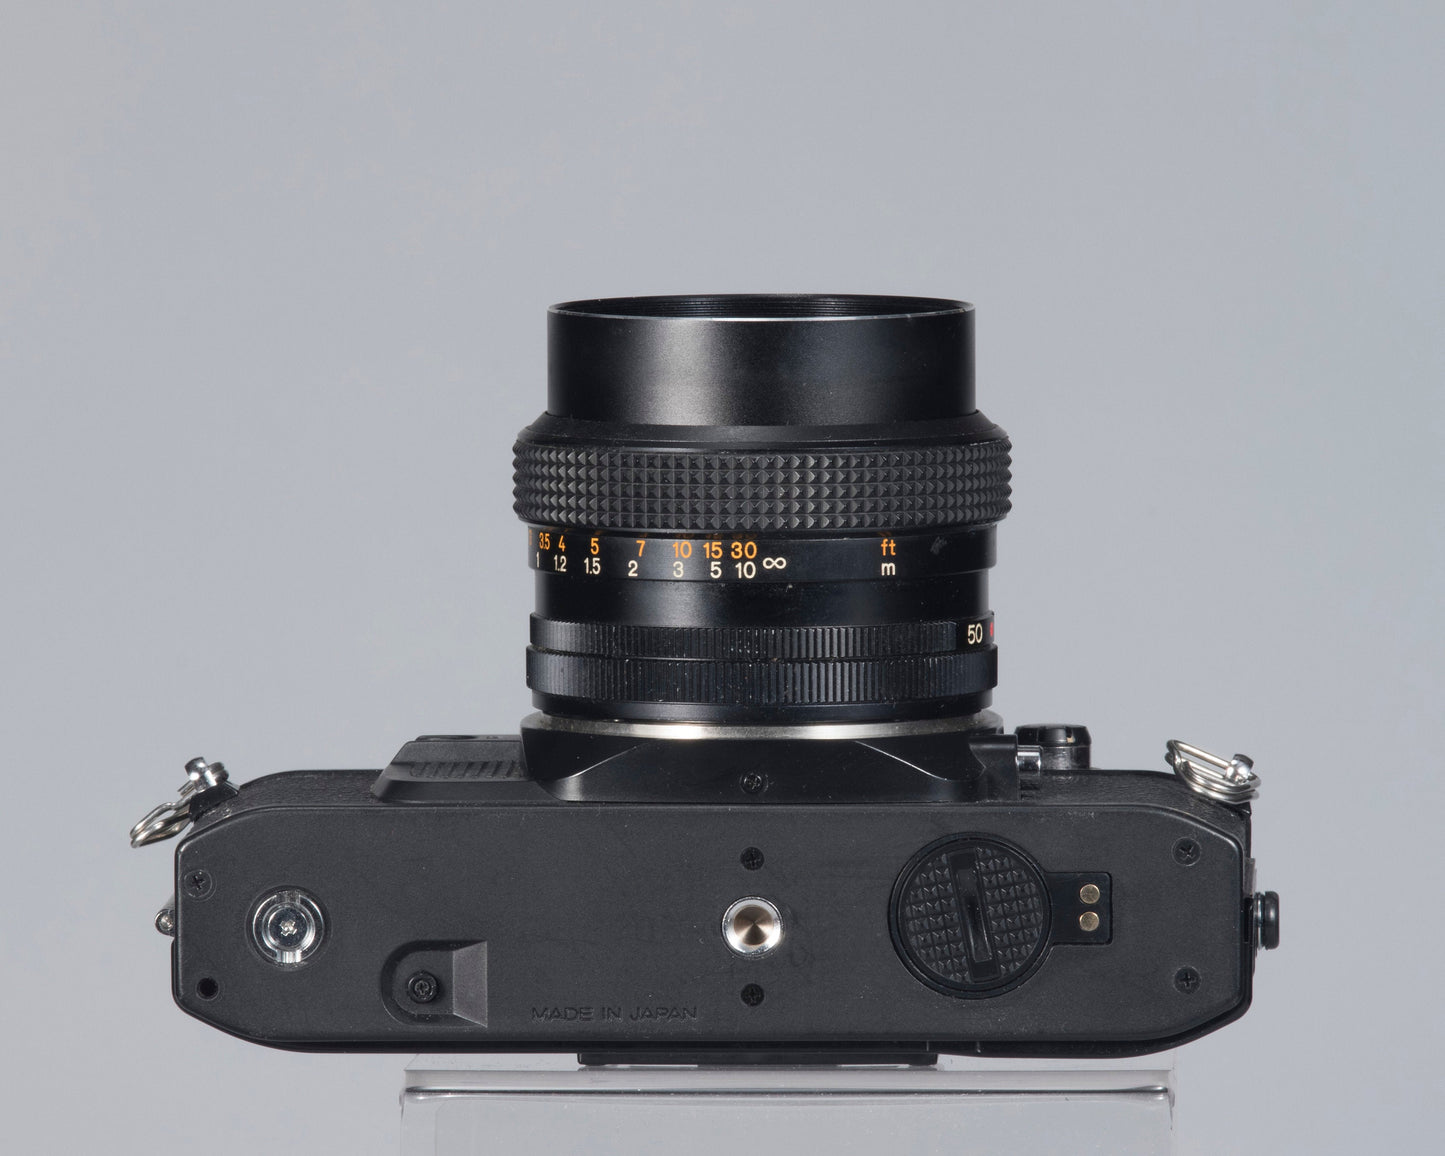 Konica FC-1 35mm film SLR tenue